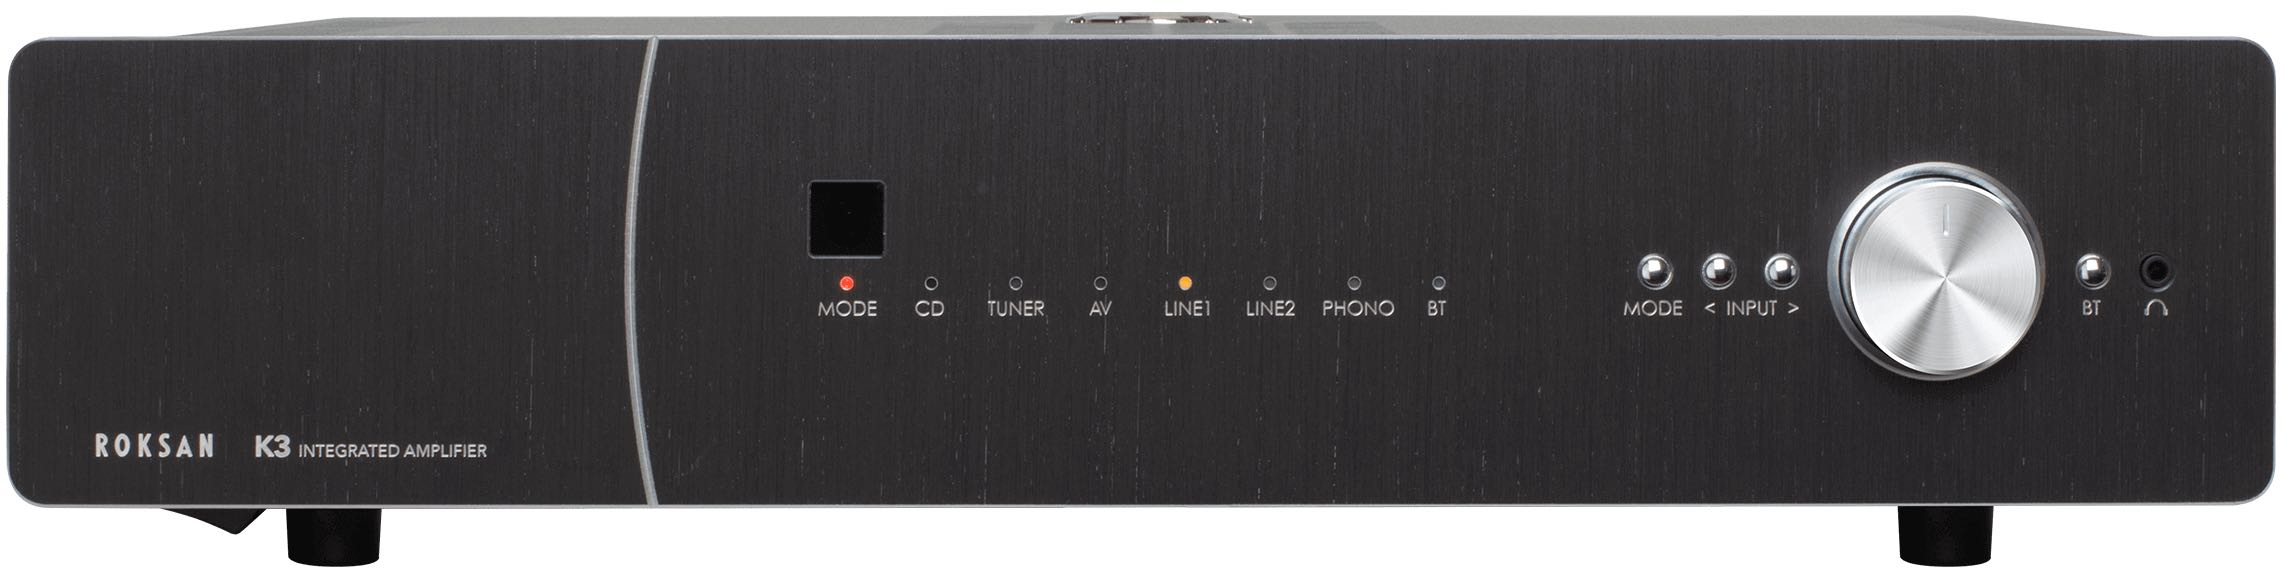 Фото № 1 Roksan K3 Integrated Amplifier (non-BT) charcoal - цены, наличие, отзывы в интернет-магазине